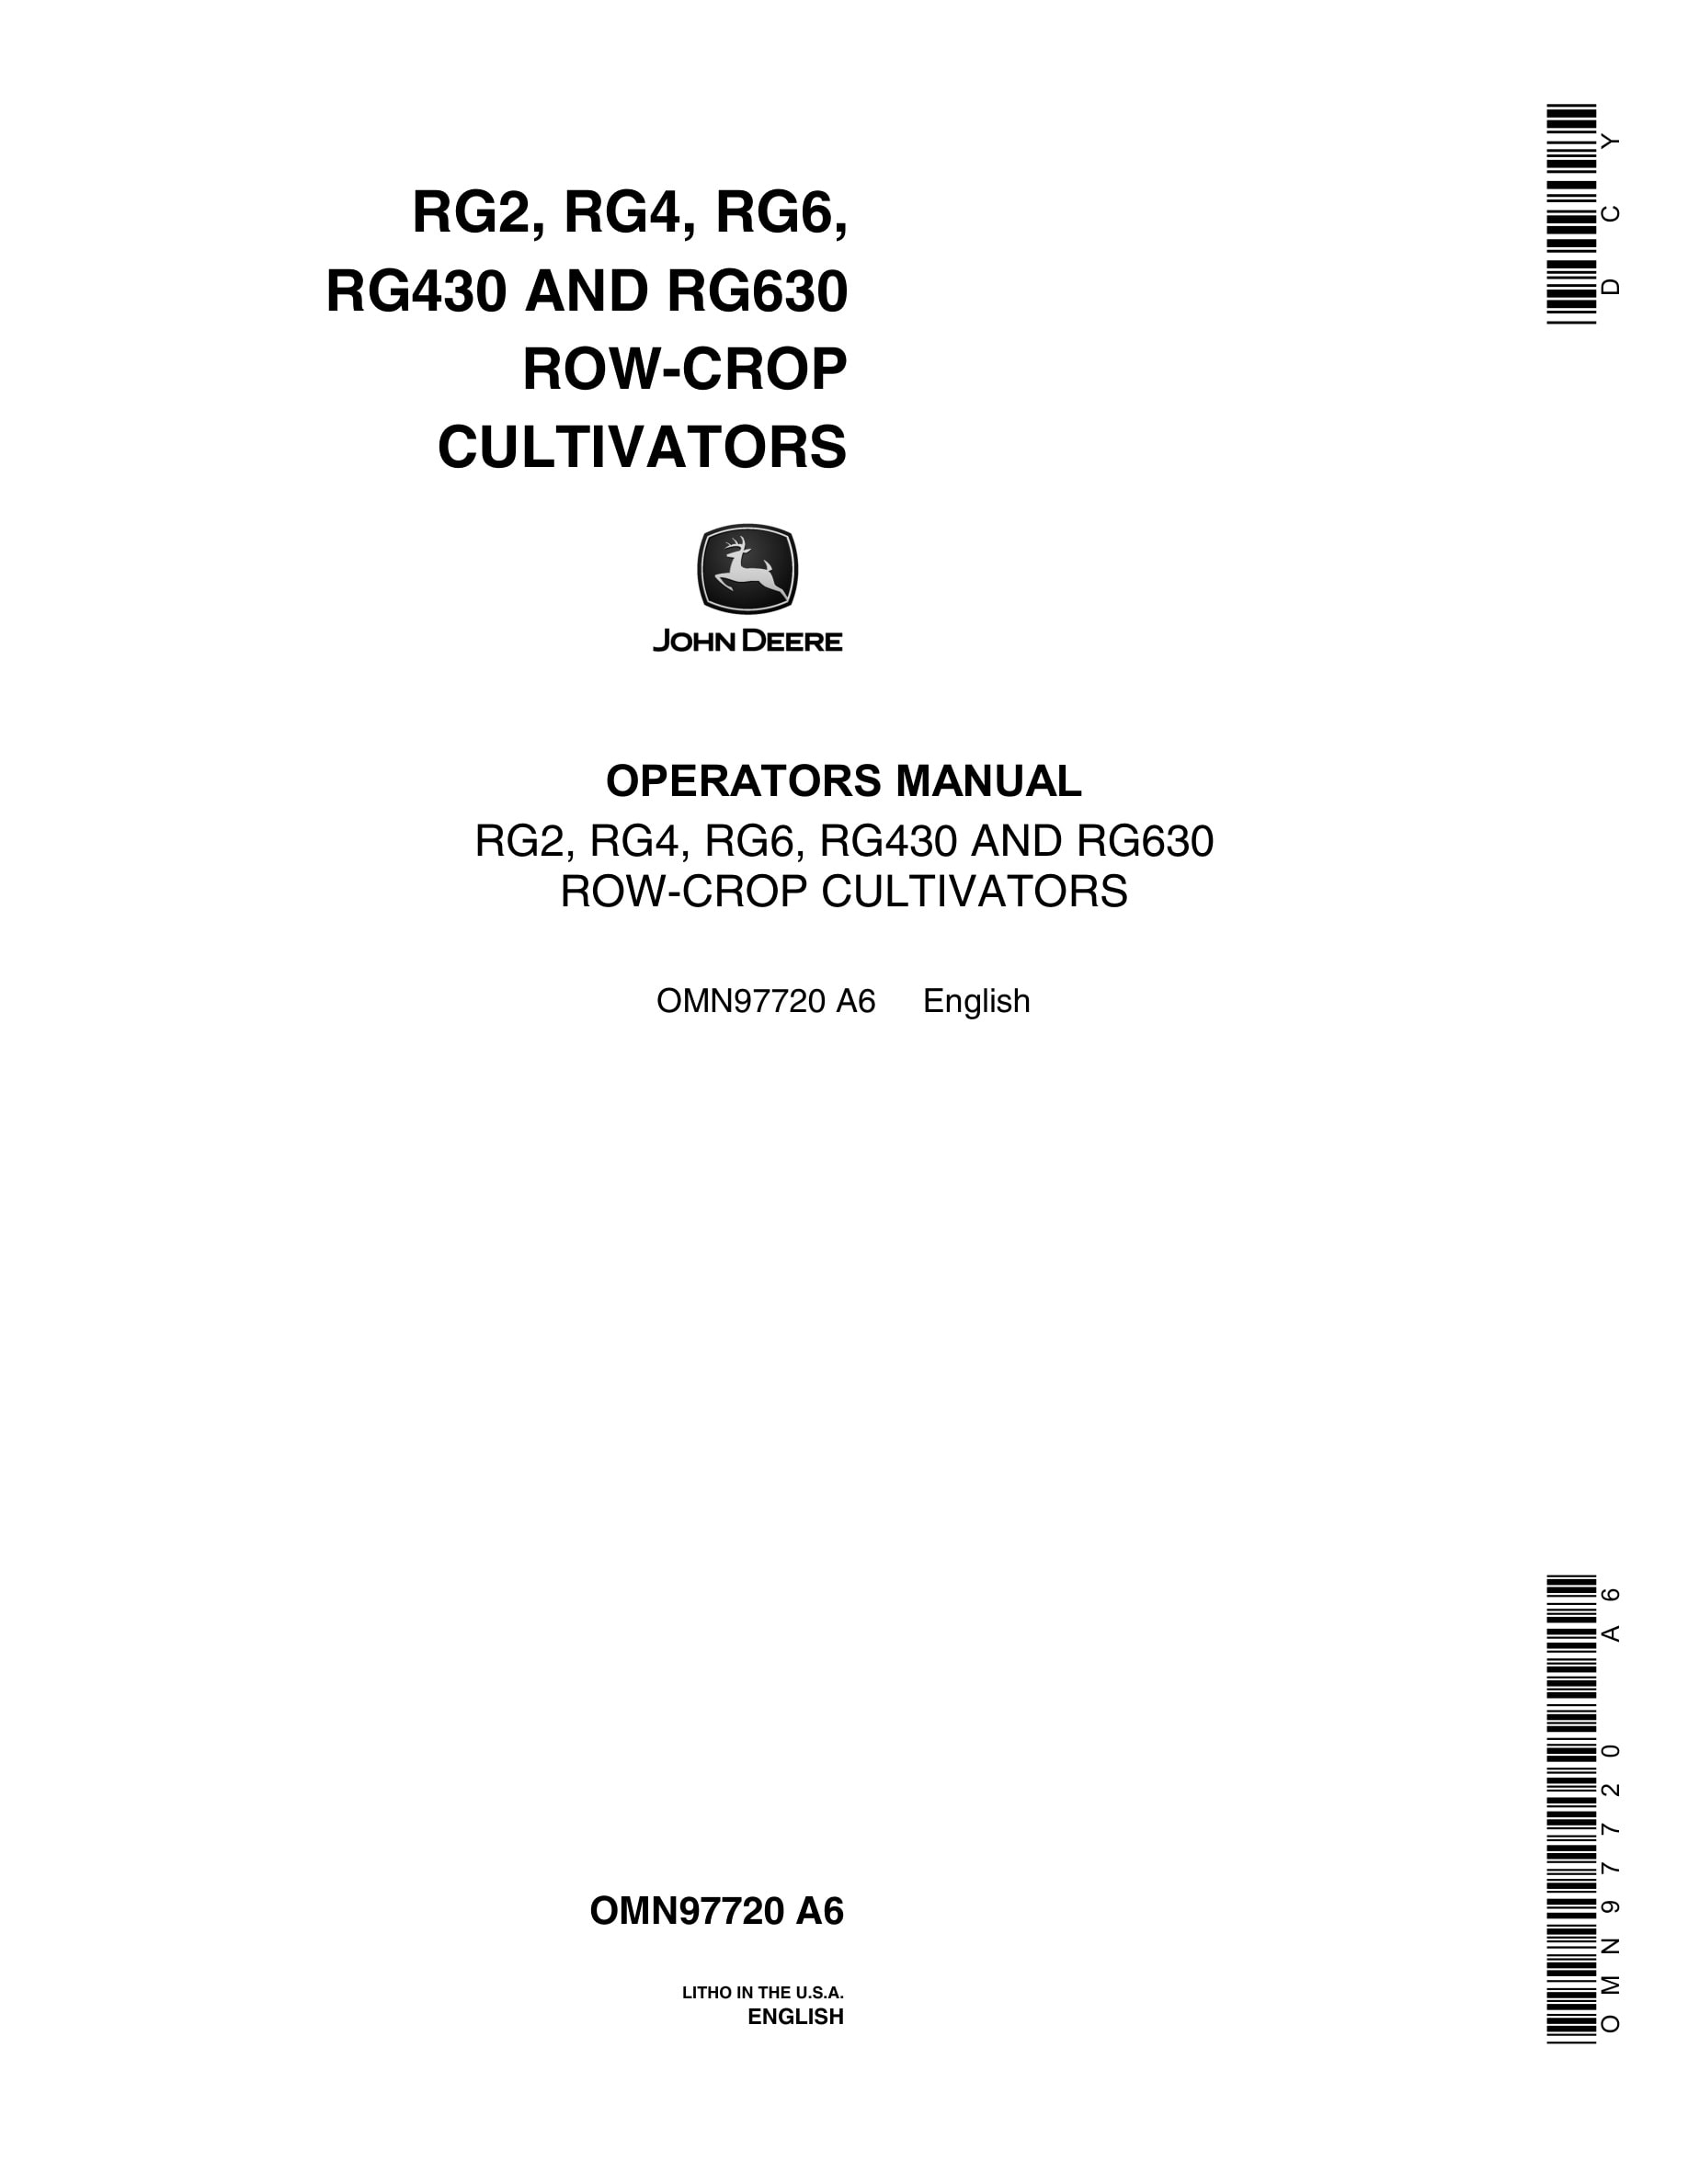 John Deere RG2, RG4, RG6, RG430 AND RG630 ROW-CROP CULTIVATOR Operator Manual OMN97720-1